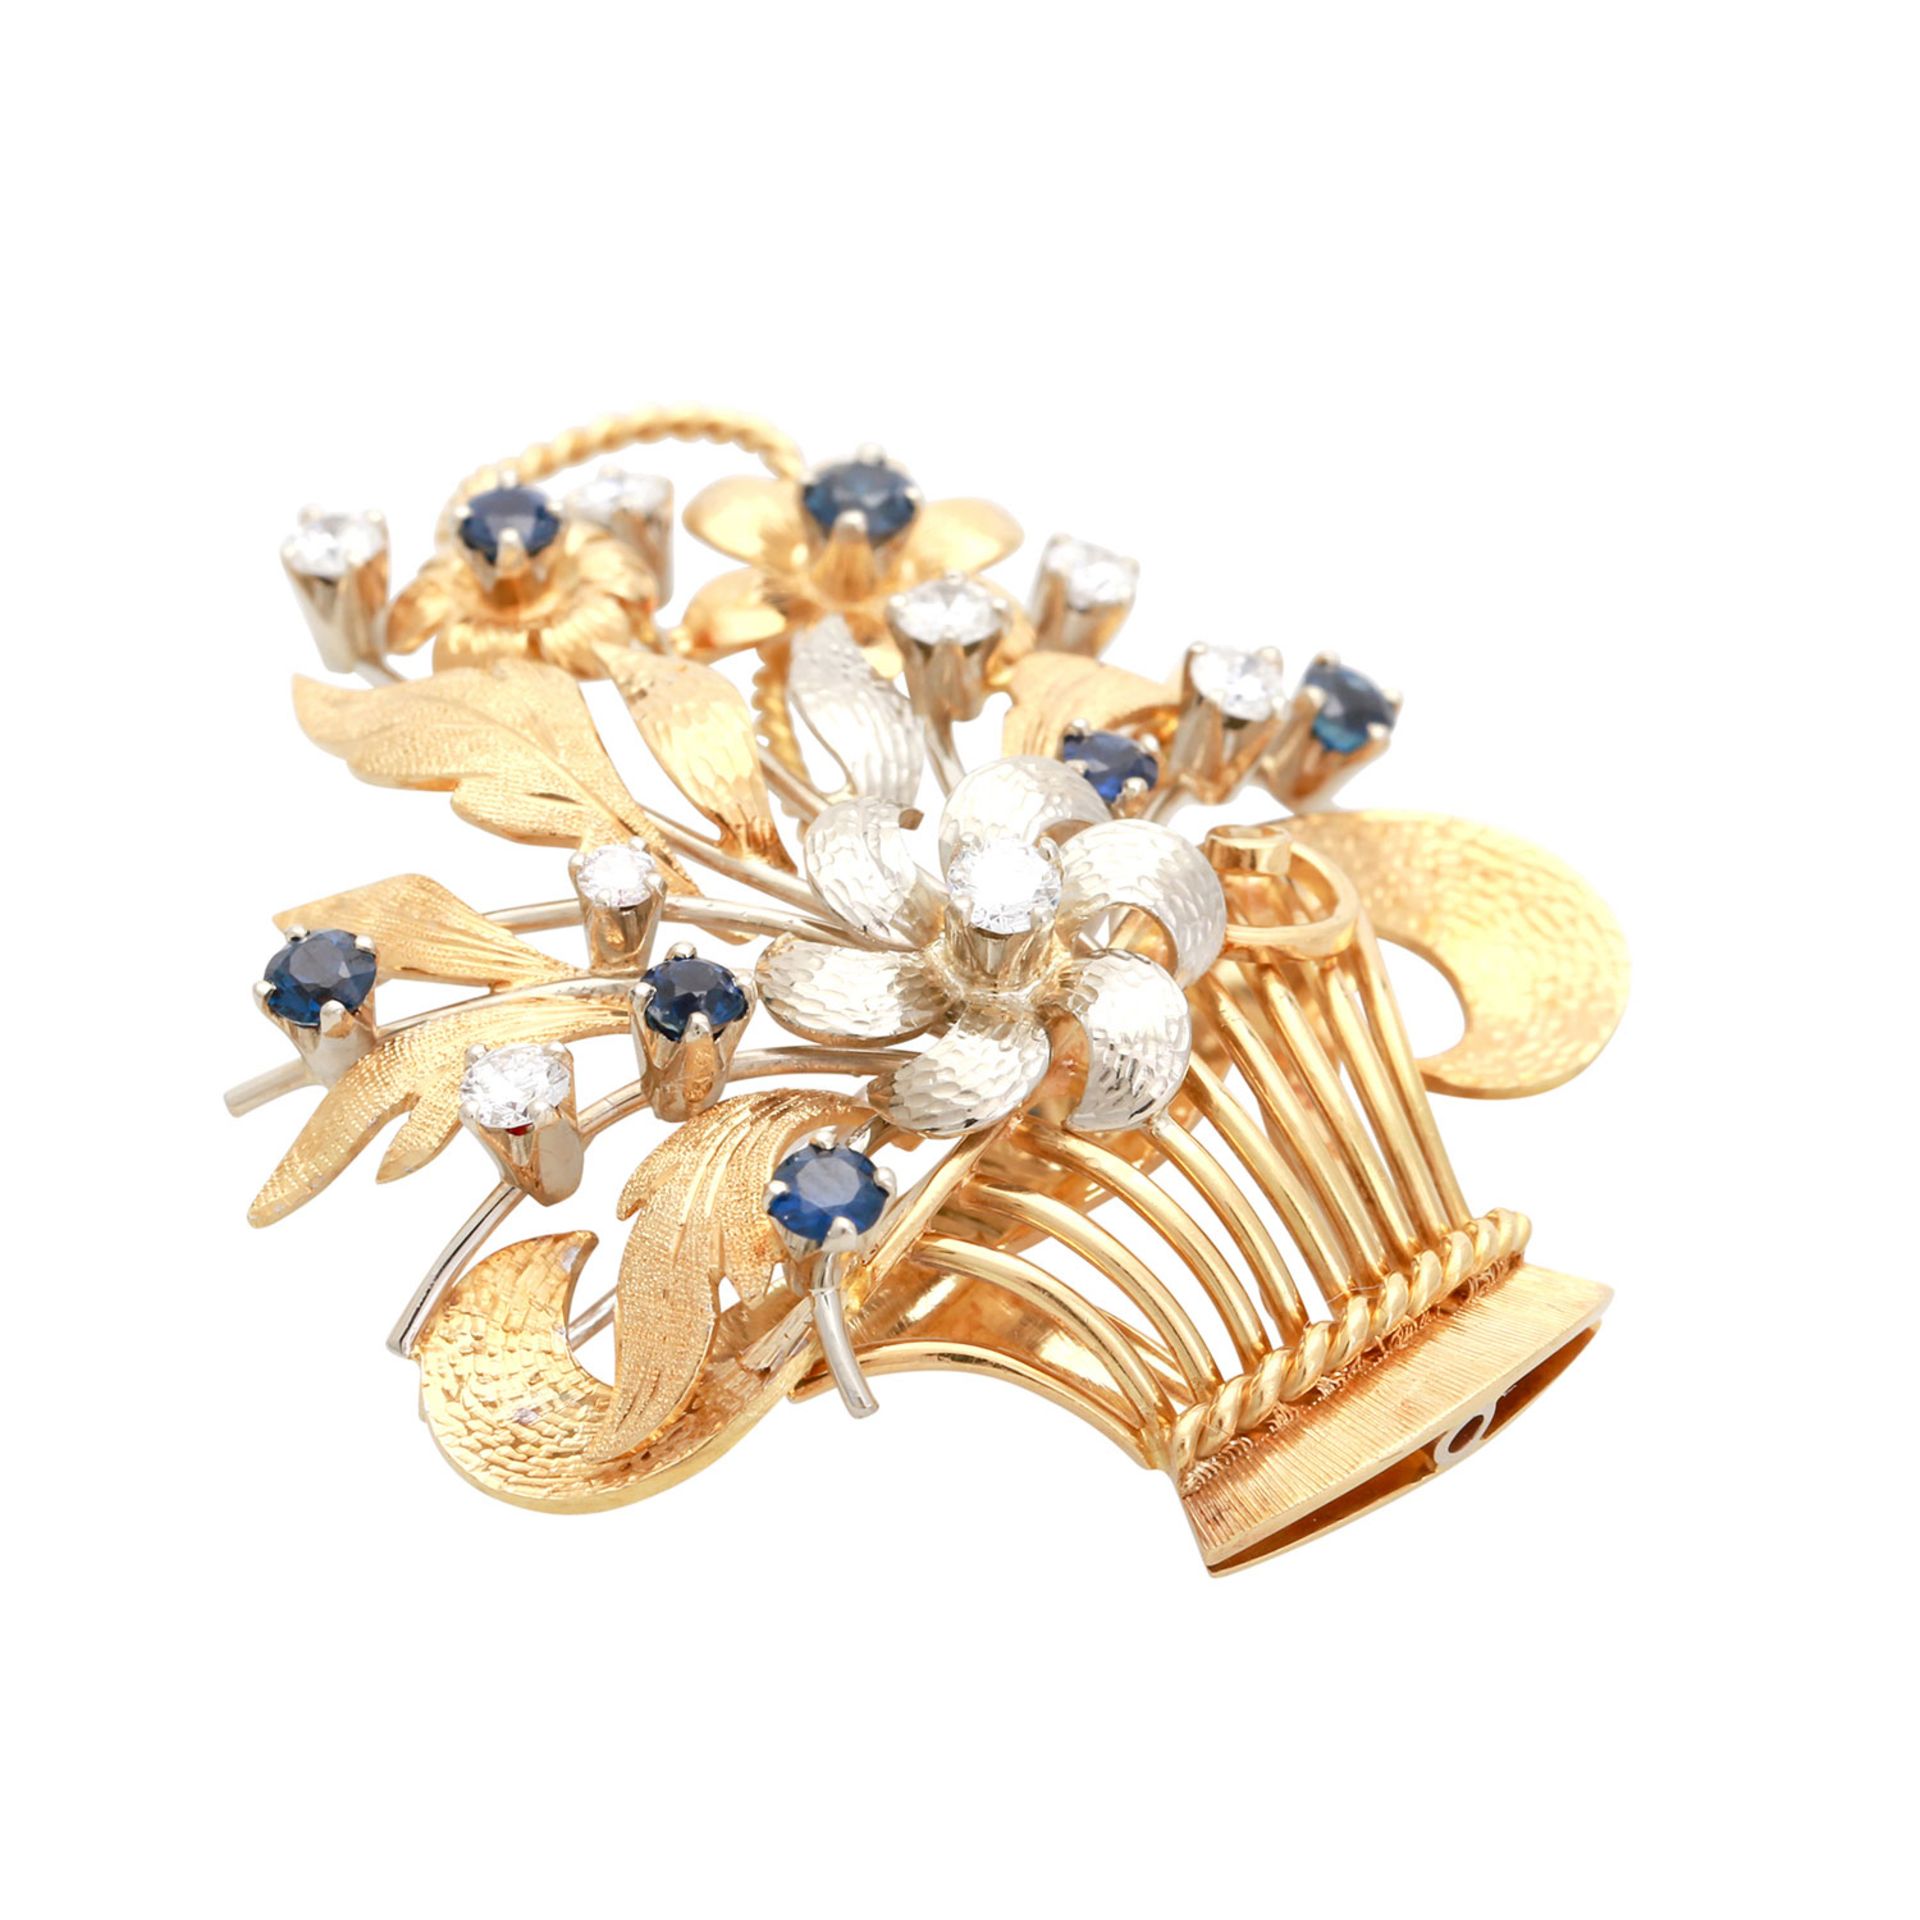 Brosche mit Diamanten und Saphiren in Form eines Blütenkorbs, 8 Brillanten von zus. ca. 0,45 ct., - Image 3 of 4